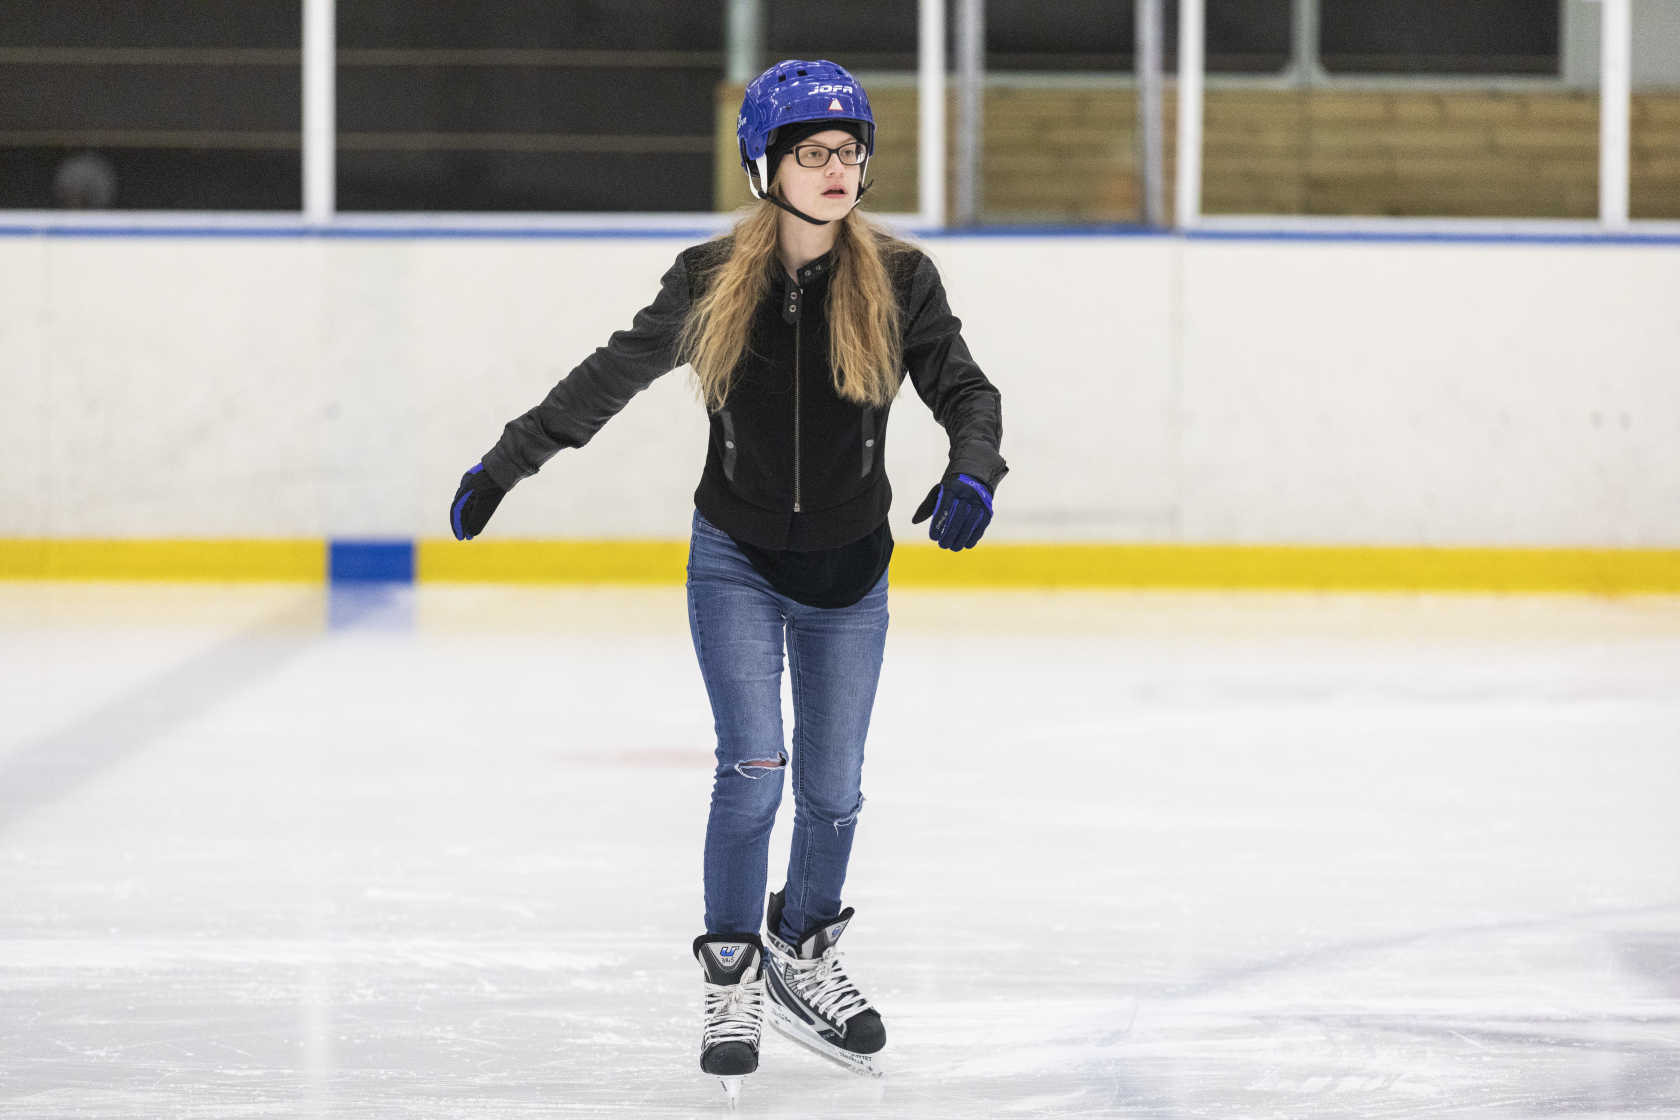 En tjej med blå skridskohjälp och hockeyskridskor åker på en rink i en ishall.